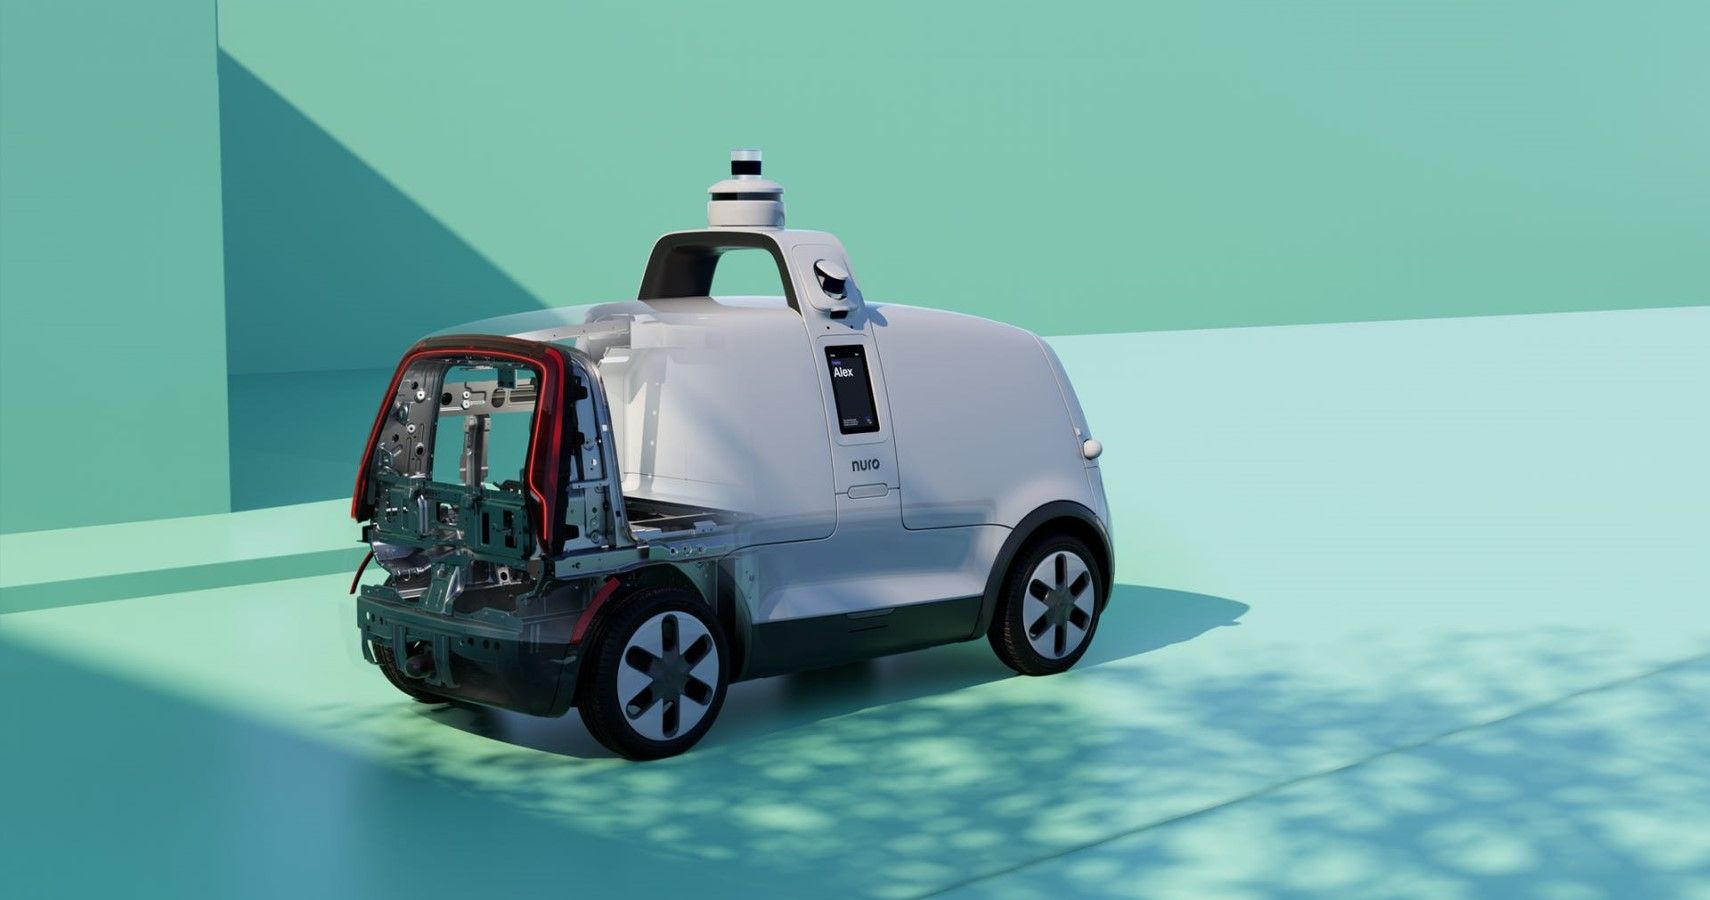 Nuro autonomous vehicle rear third quarter view